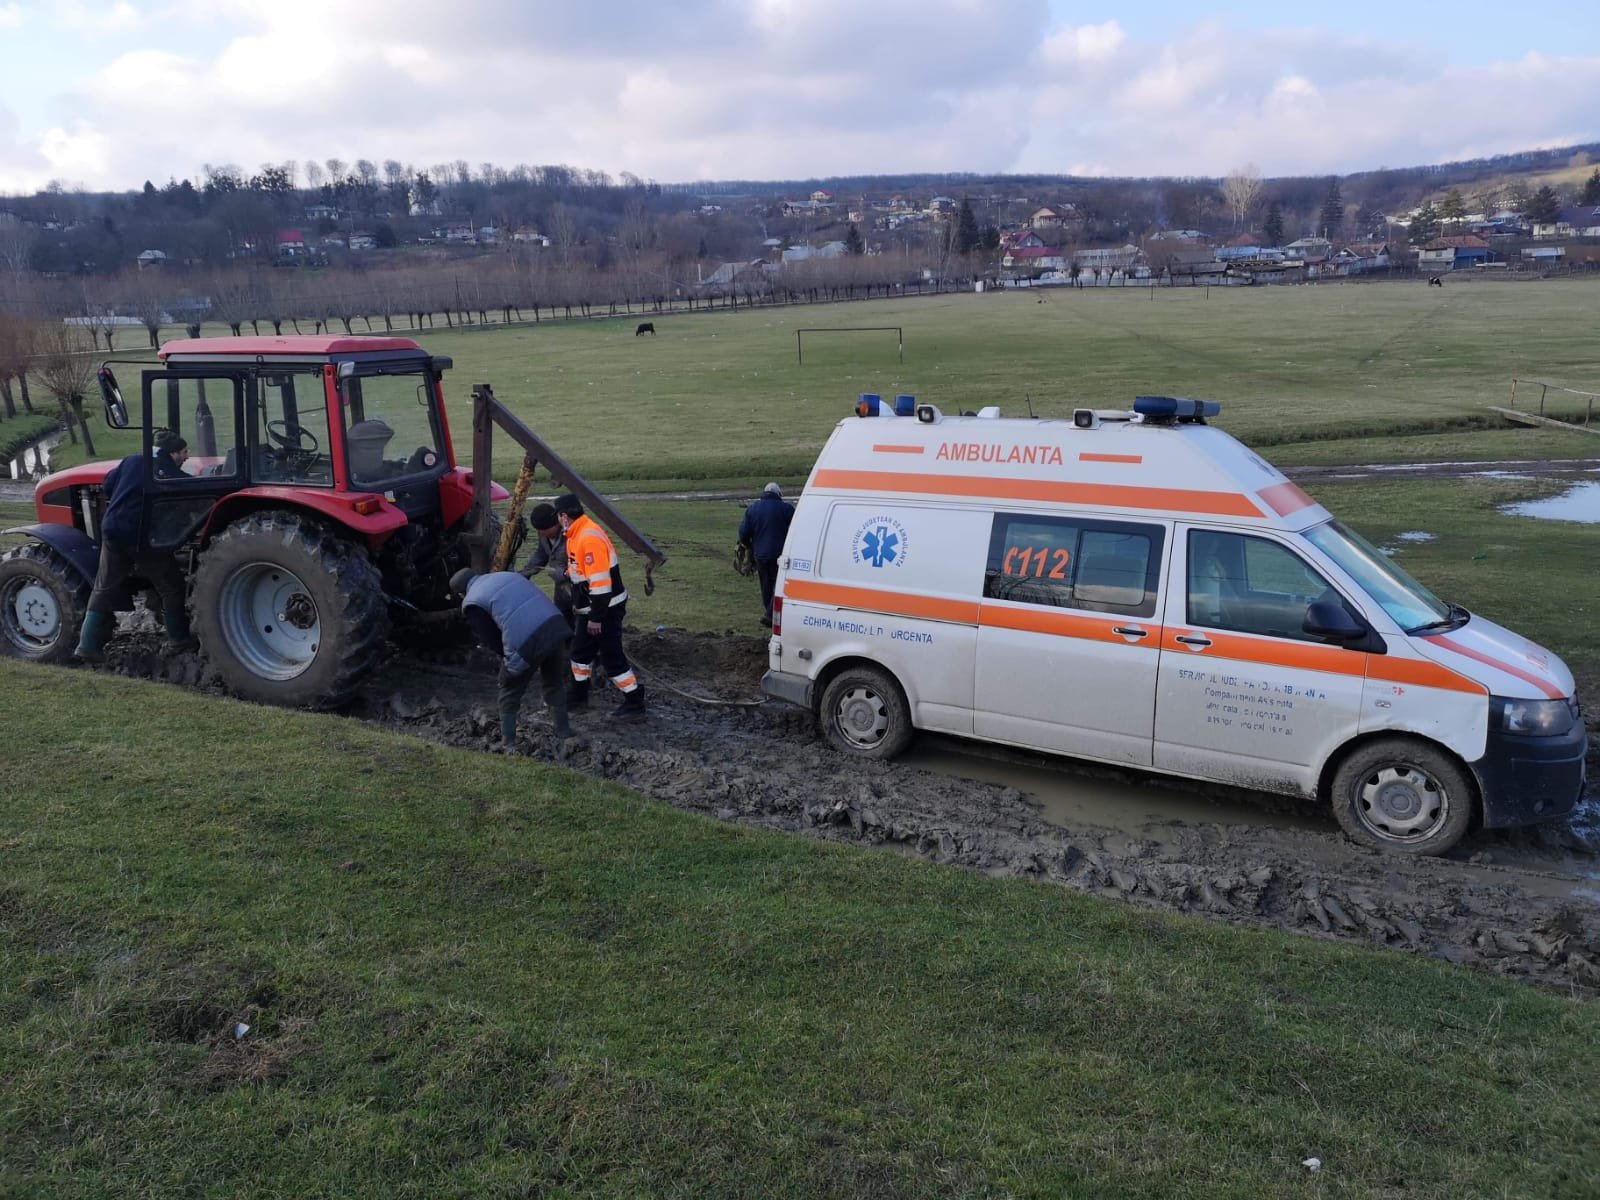  România, Vaslui: Ambulanță blocată în noroi, scoasă cu tractorul